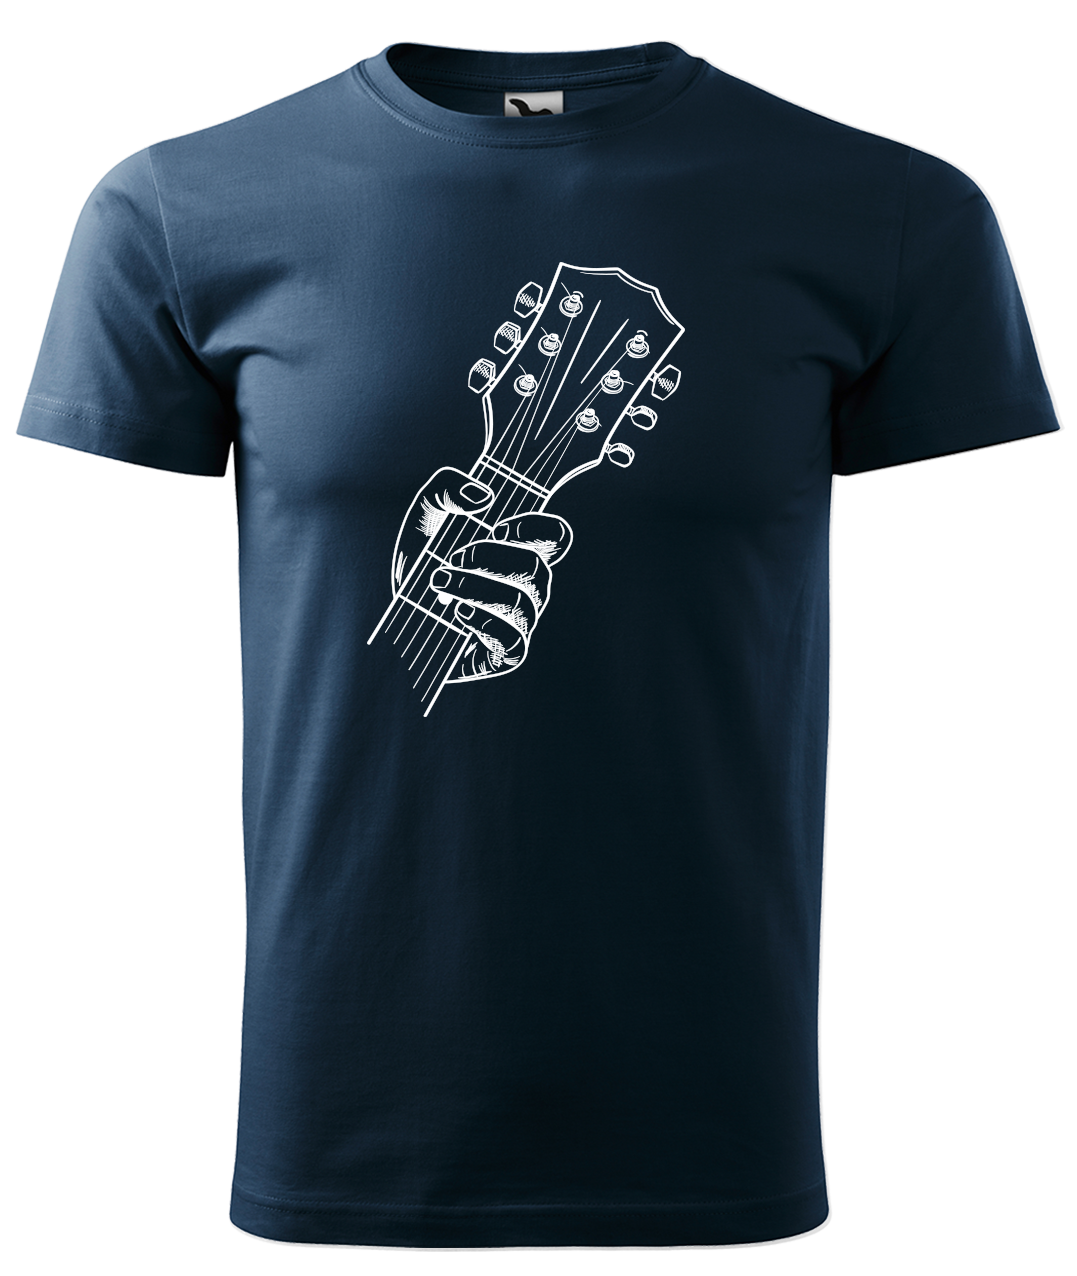 Dětské tričko s kytarou - Hlava kytary Velikost: 4 roky / 110 cm, Barva: Námořní modrá (02)